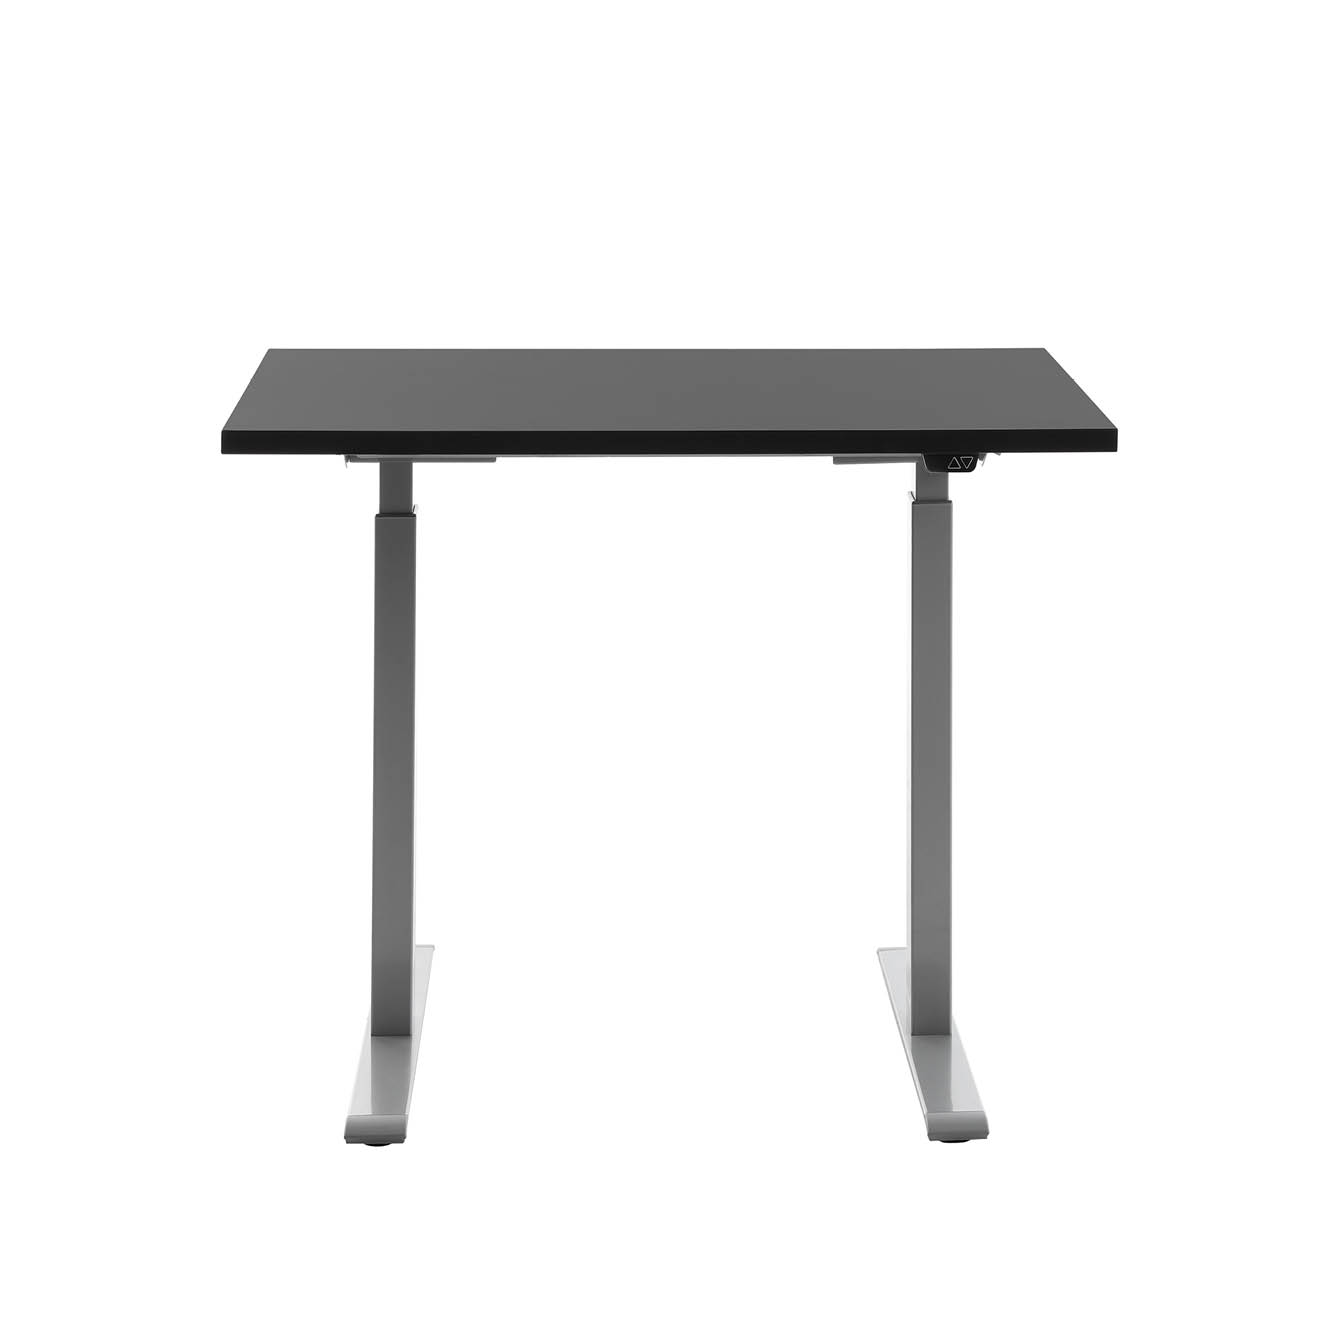 100 x 60 cm Schreibtisch Topstar Ergo E-Table höhenverstellbar - grau, schwarz